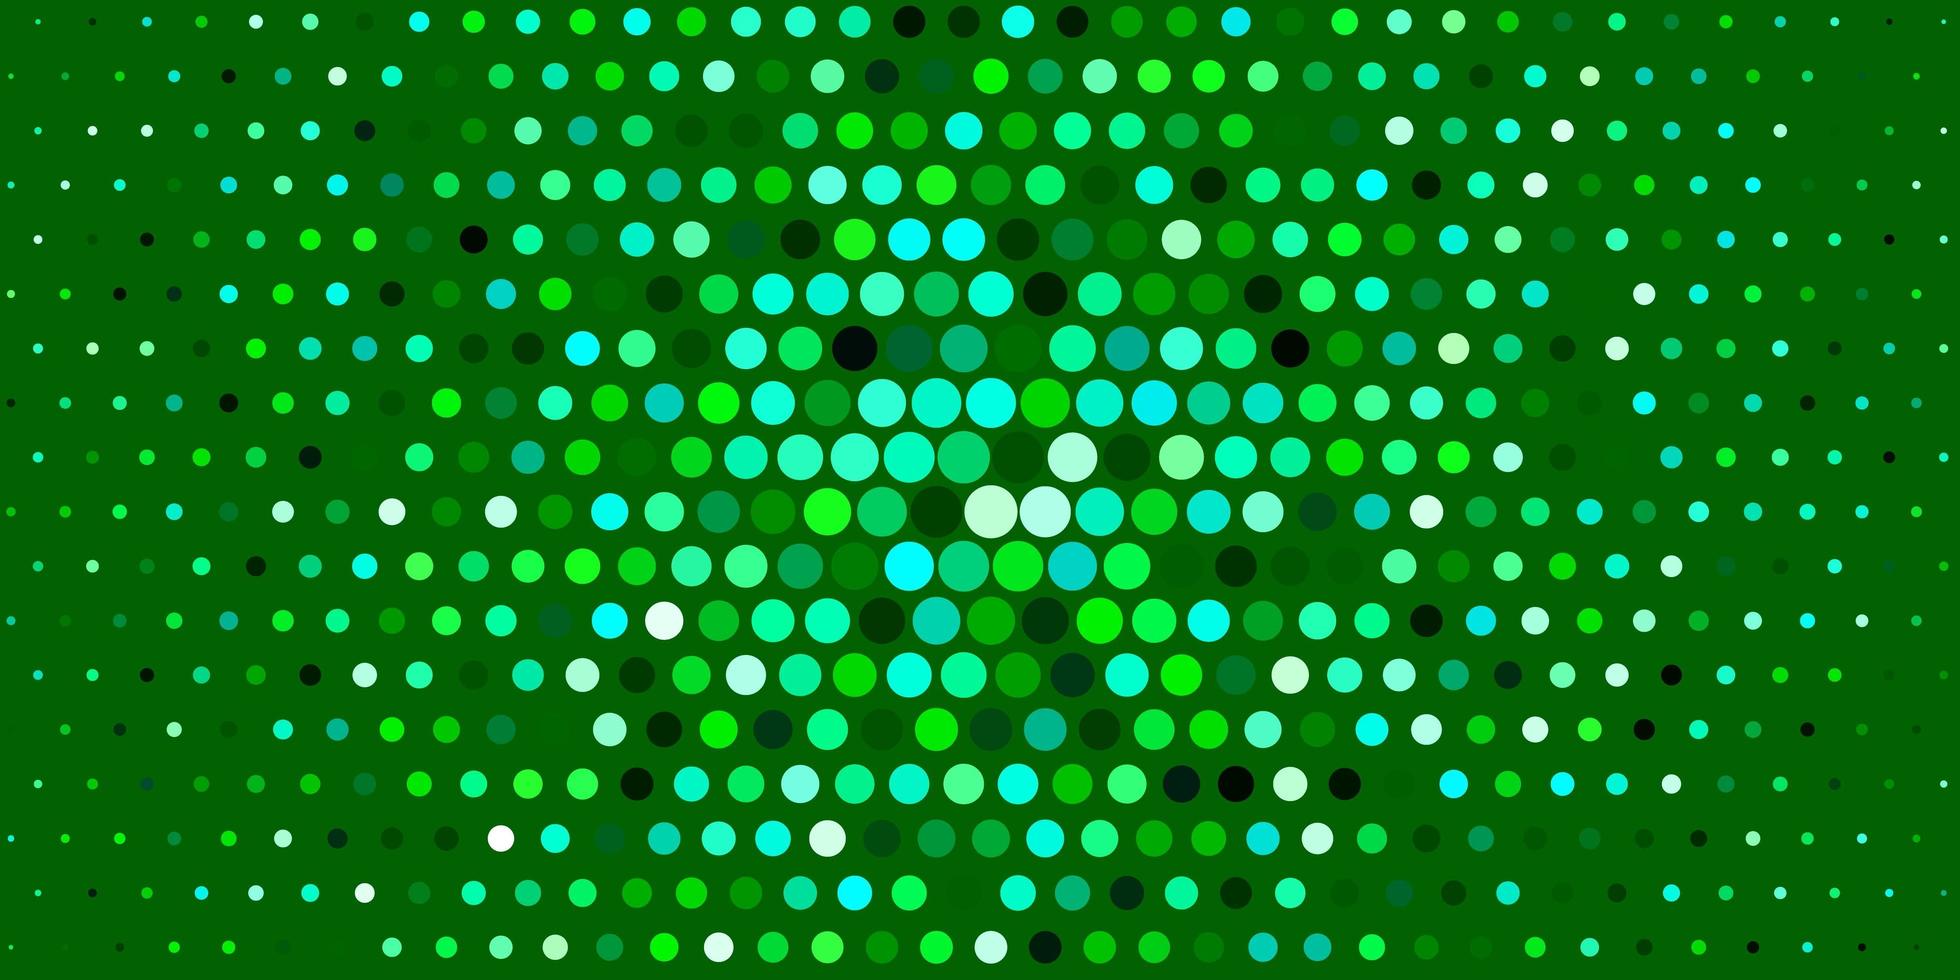 ljusblå, grön vektorstruktur med cirklar. vektor